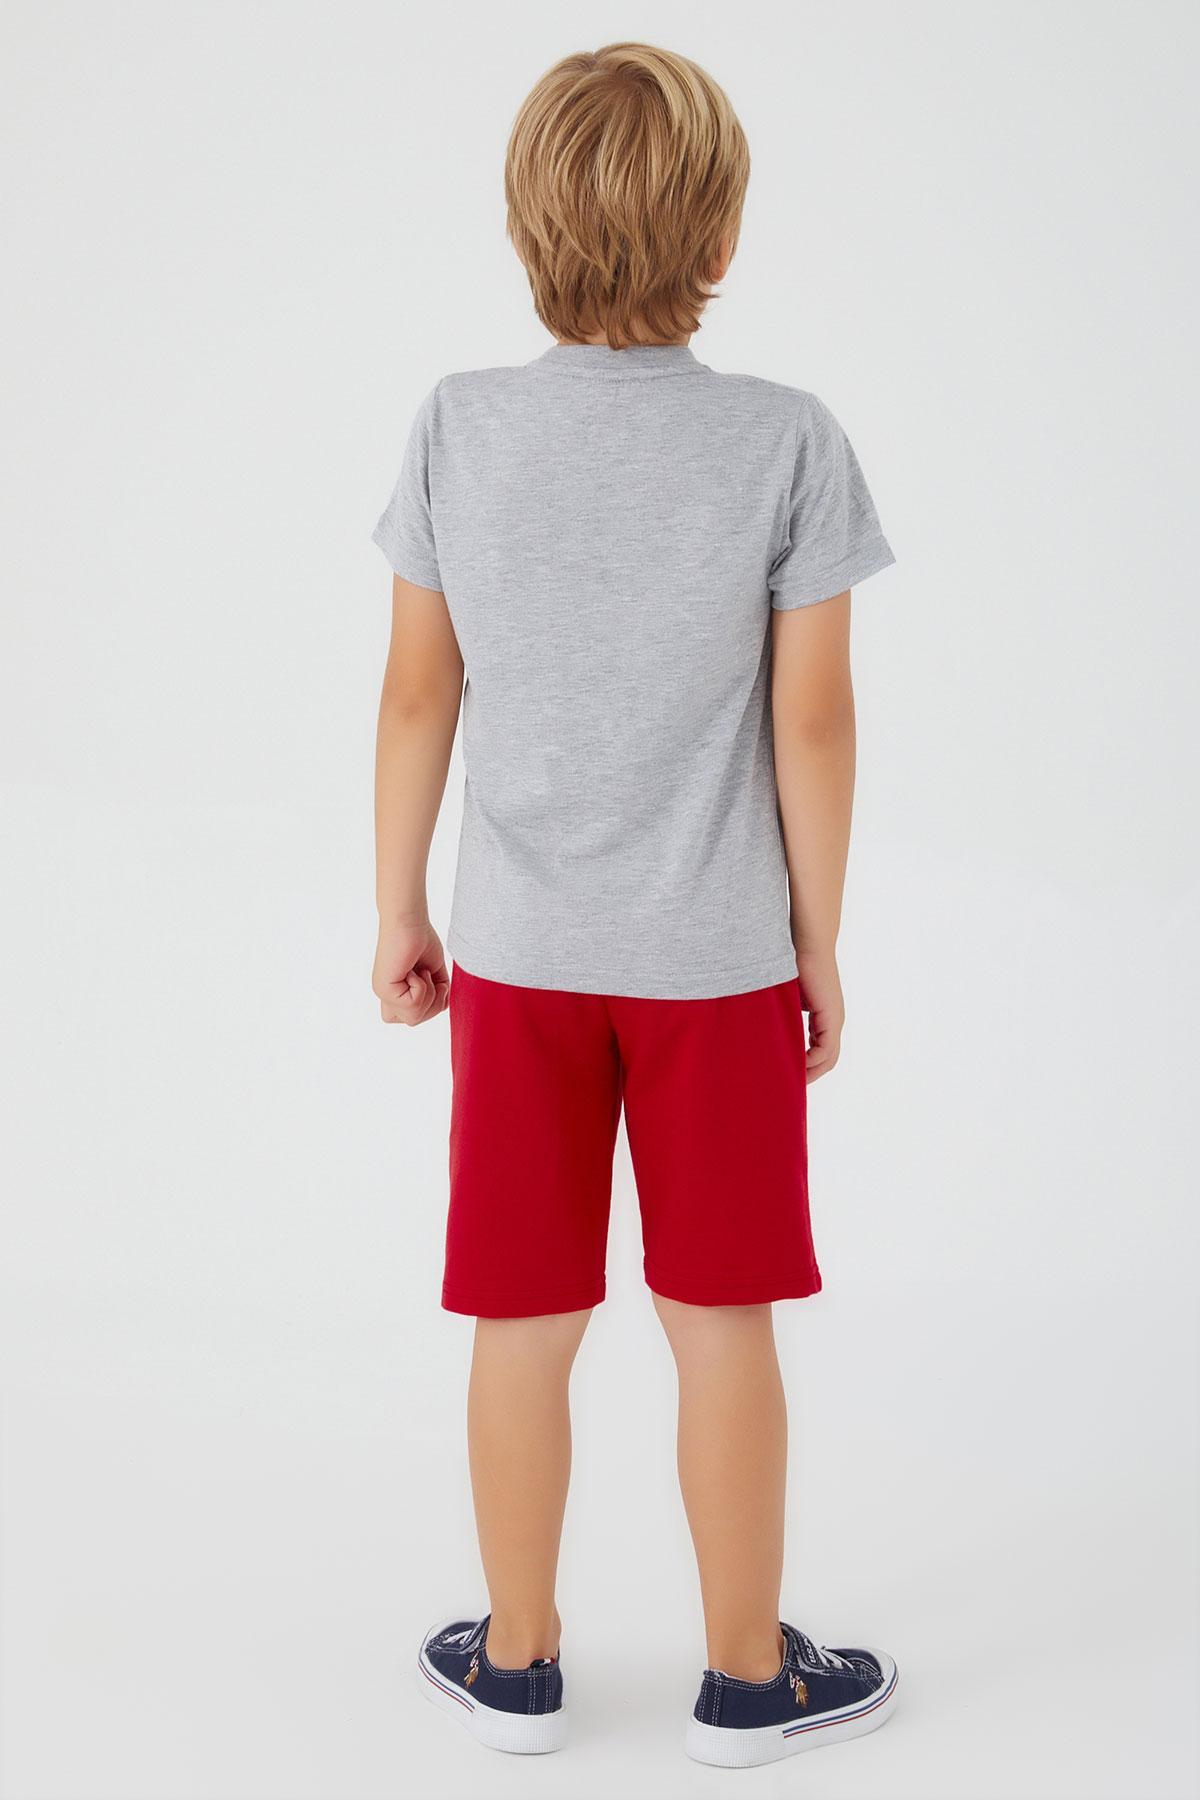 Selected image for U.S. POLO ASSN. Komplet šorc i majica za dečake US1351-4 crveno-sivi